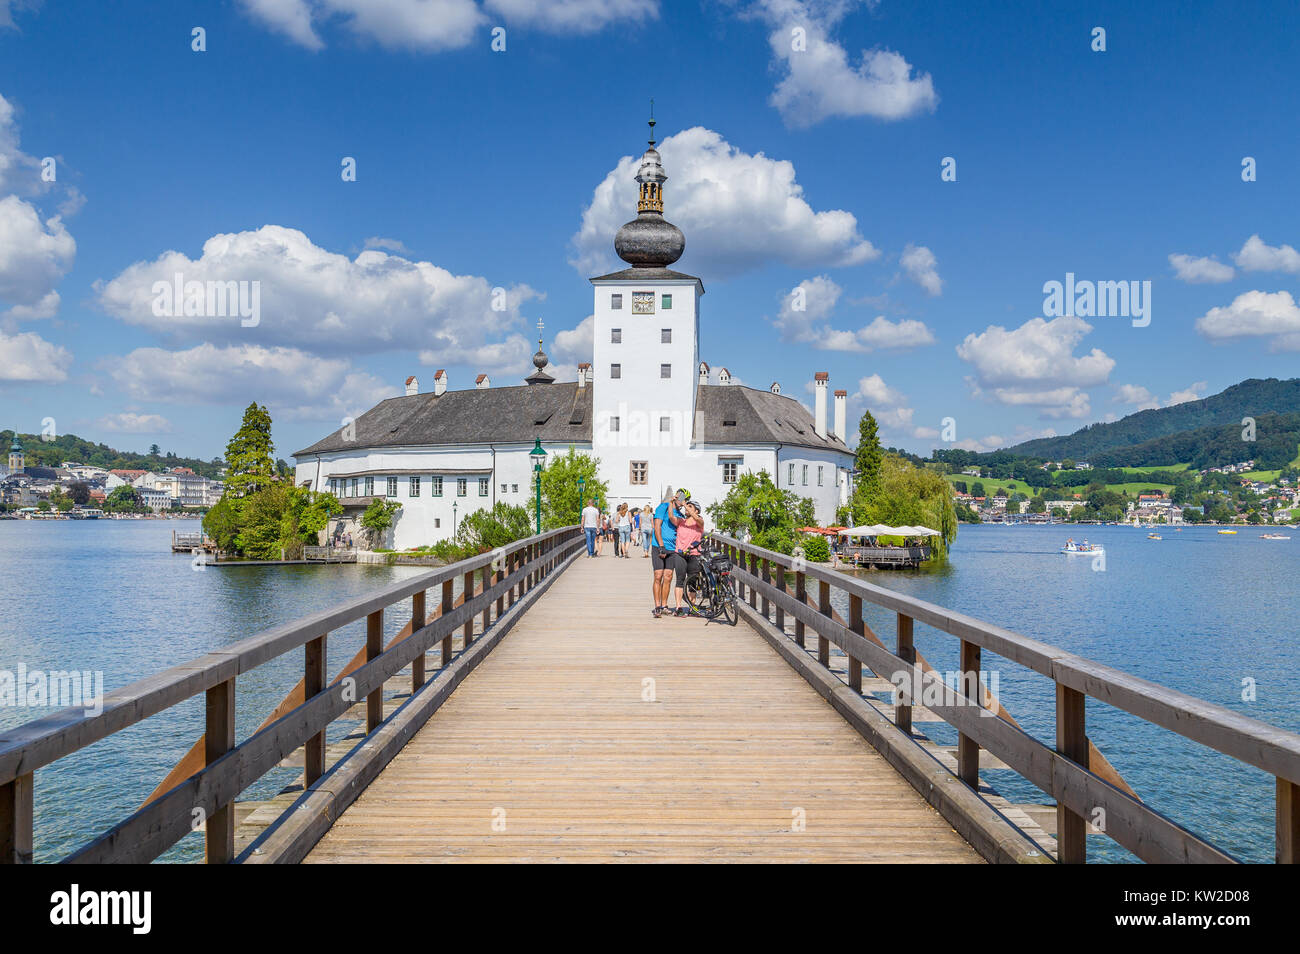 Turista giovane prendendo un selfie nella parte anteriore del famoso Schloss Ort in una giornata di sole con cielo blu e nuvole di Gmunden, regione del Salzkammergut, Austria Foto Stock